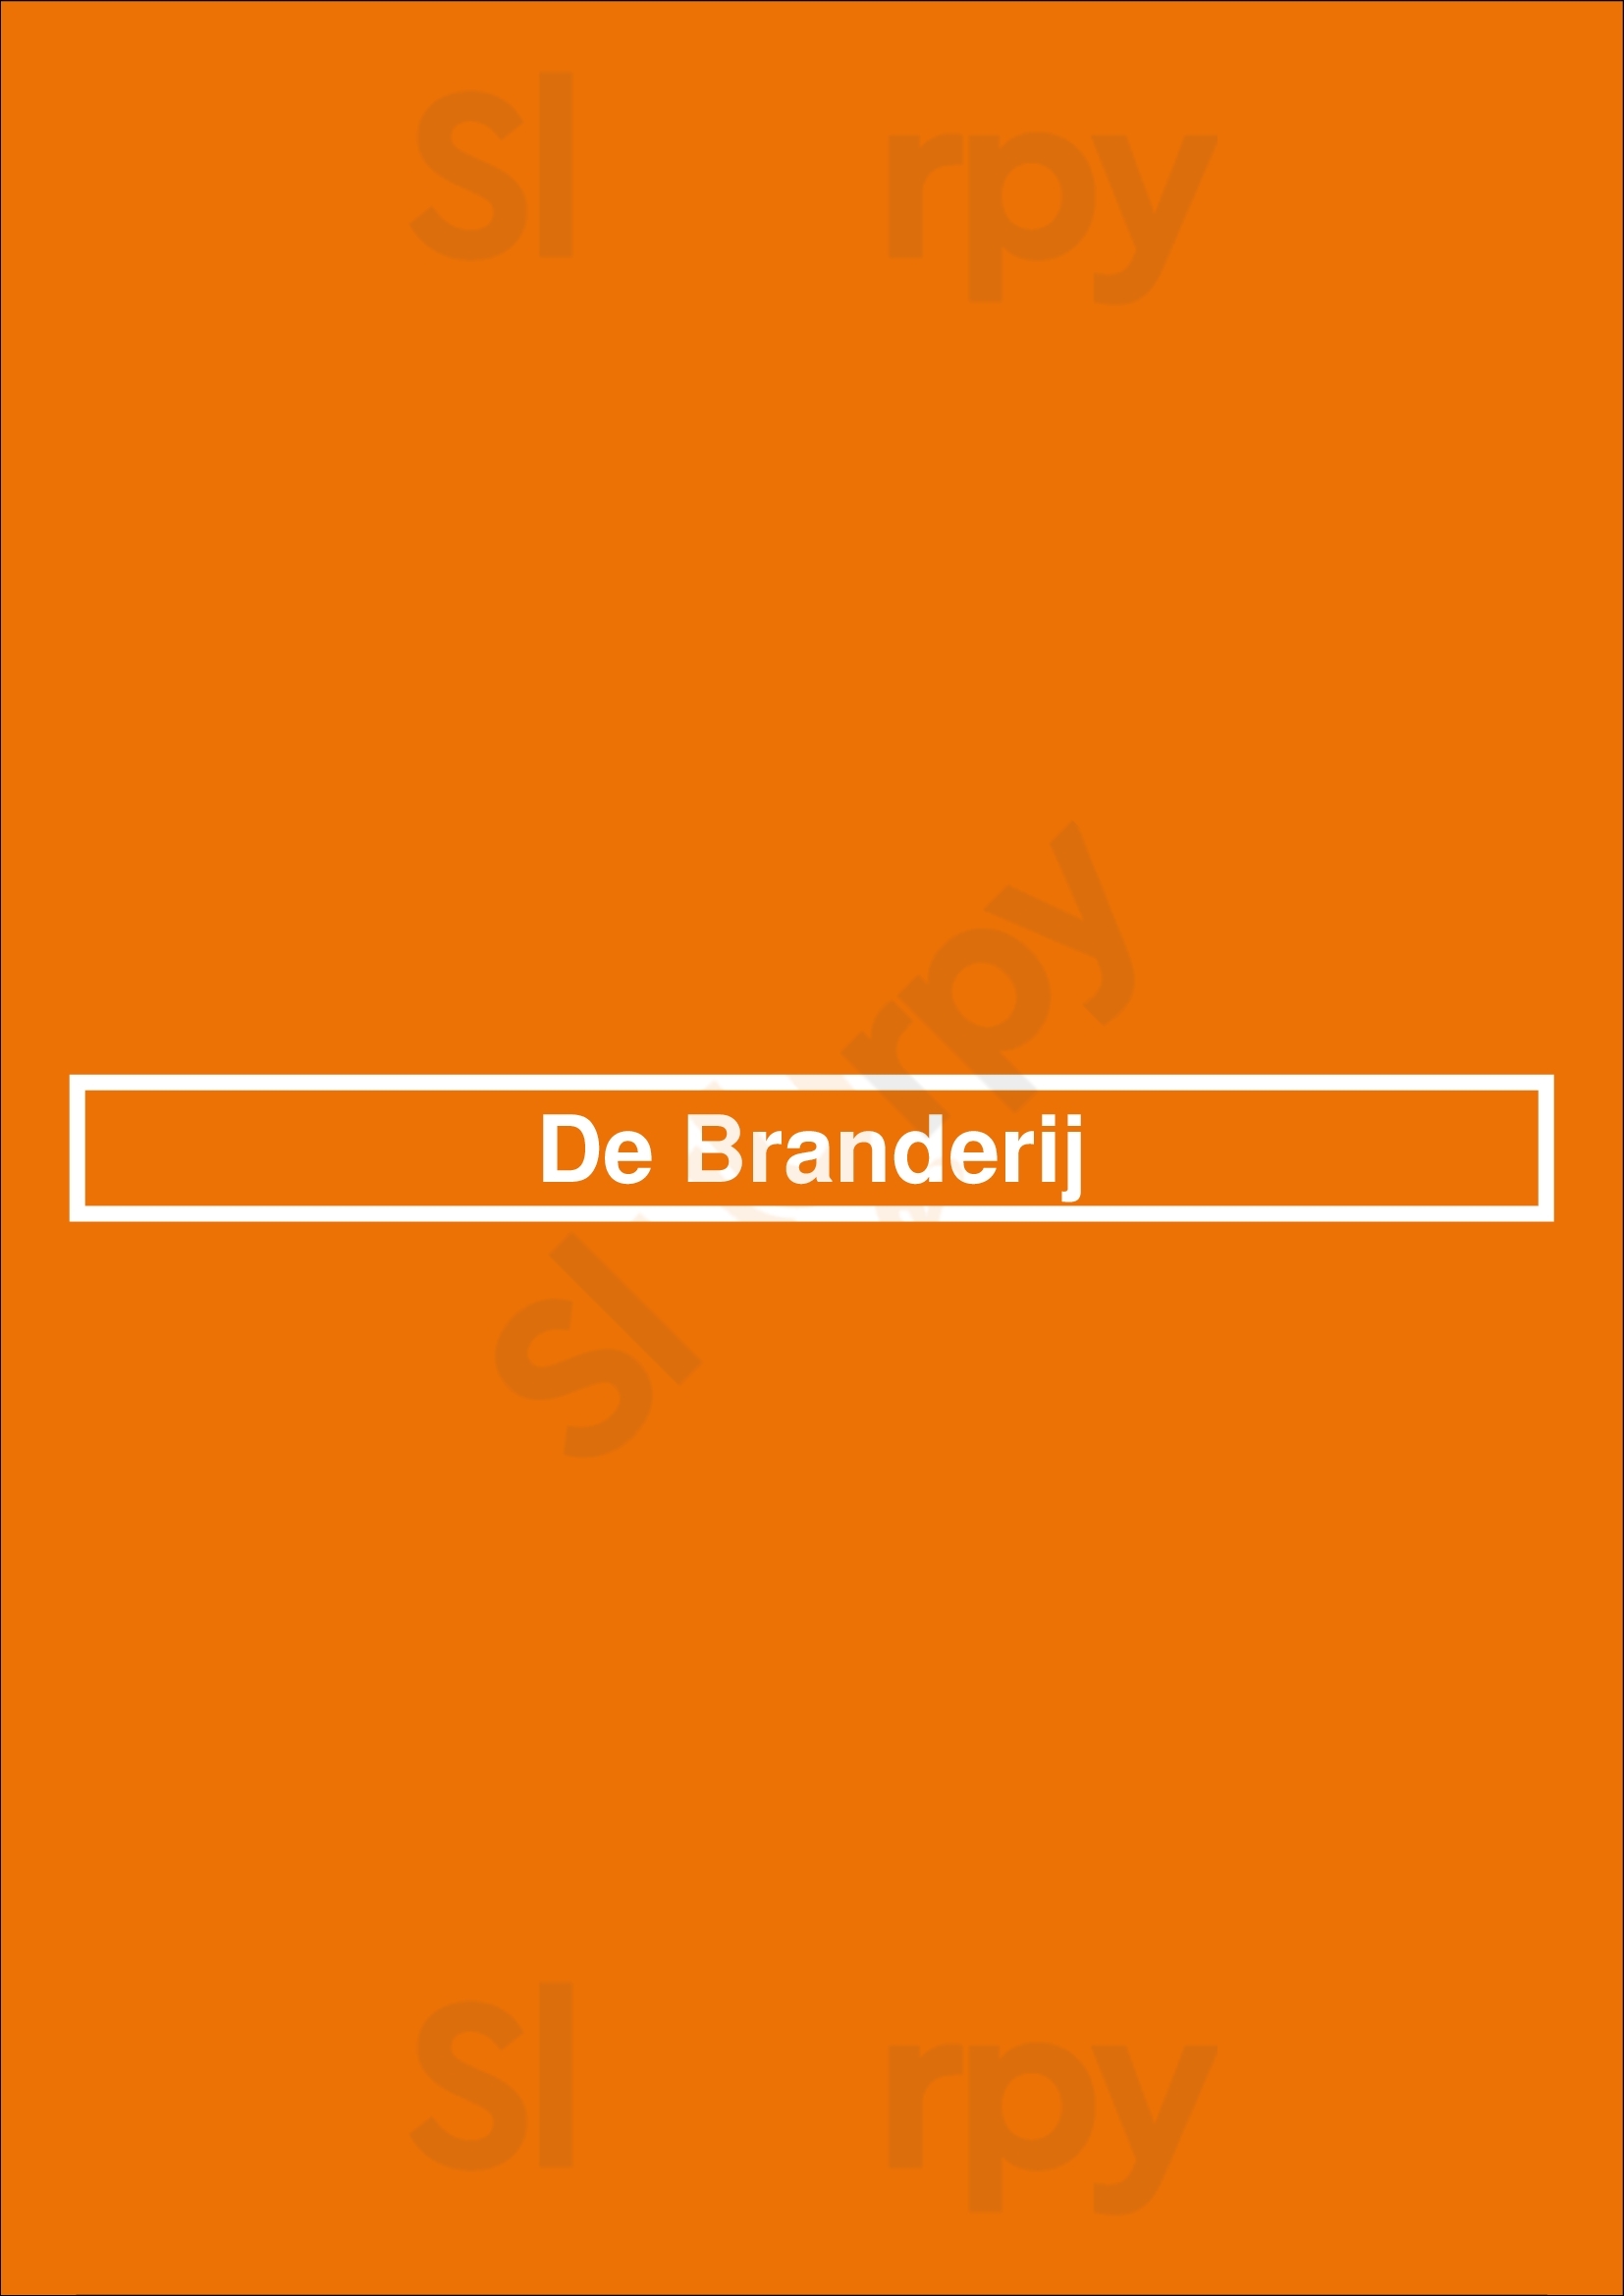 De Branderij Groningen Menu - 1